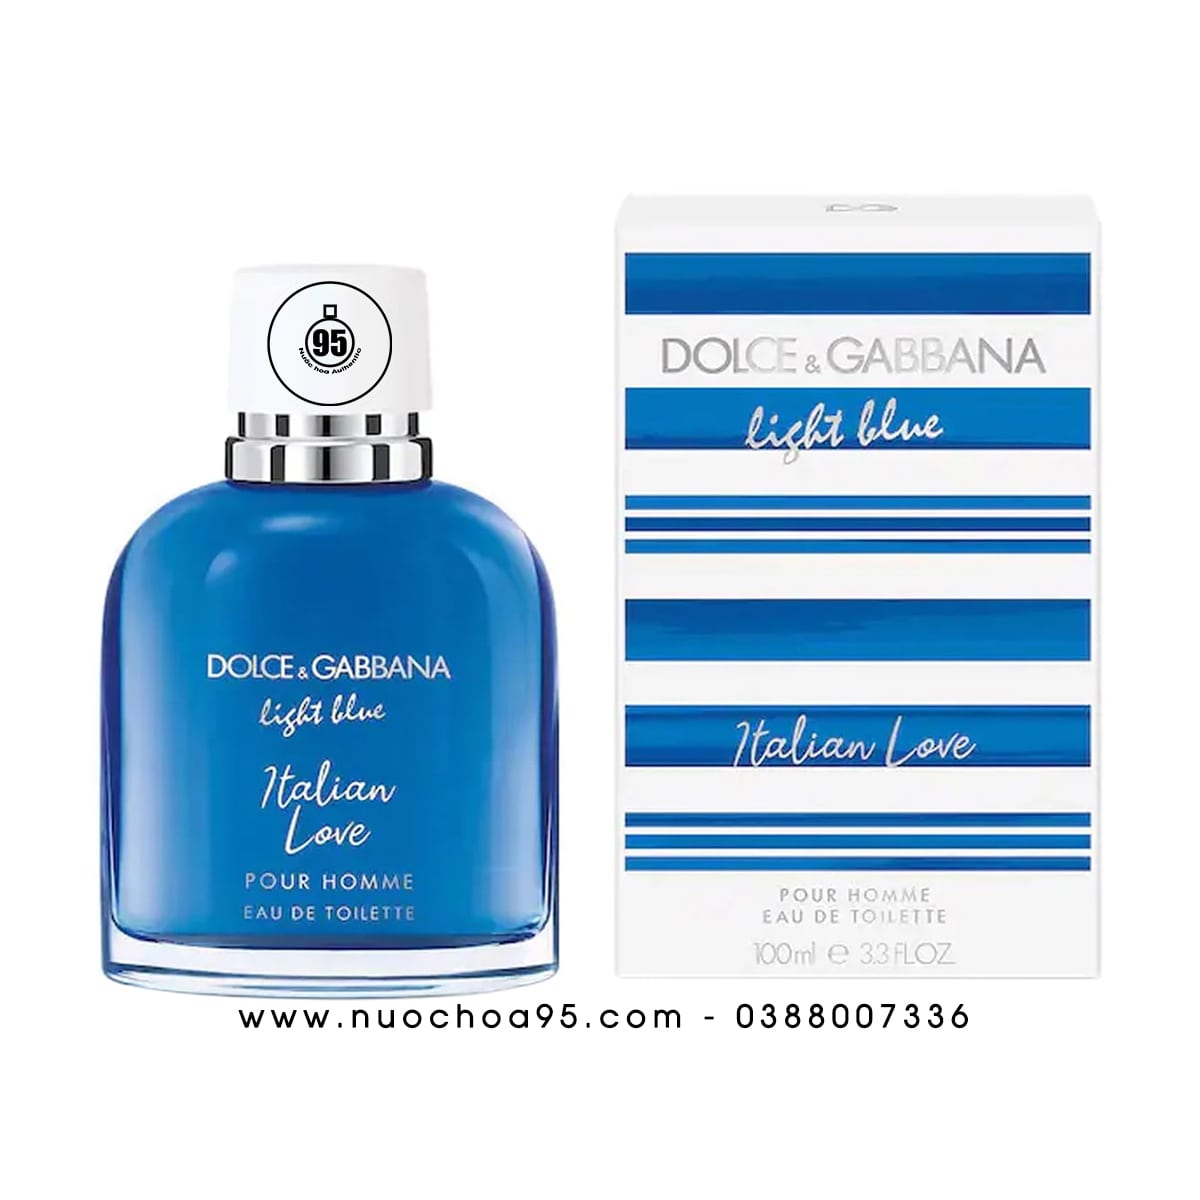 Nước hoa DG Light Blue Italian Love Pour Homme